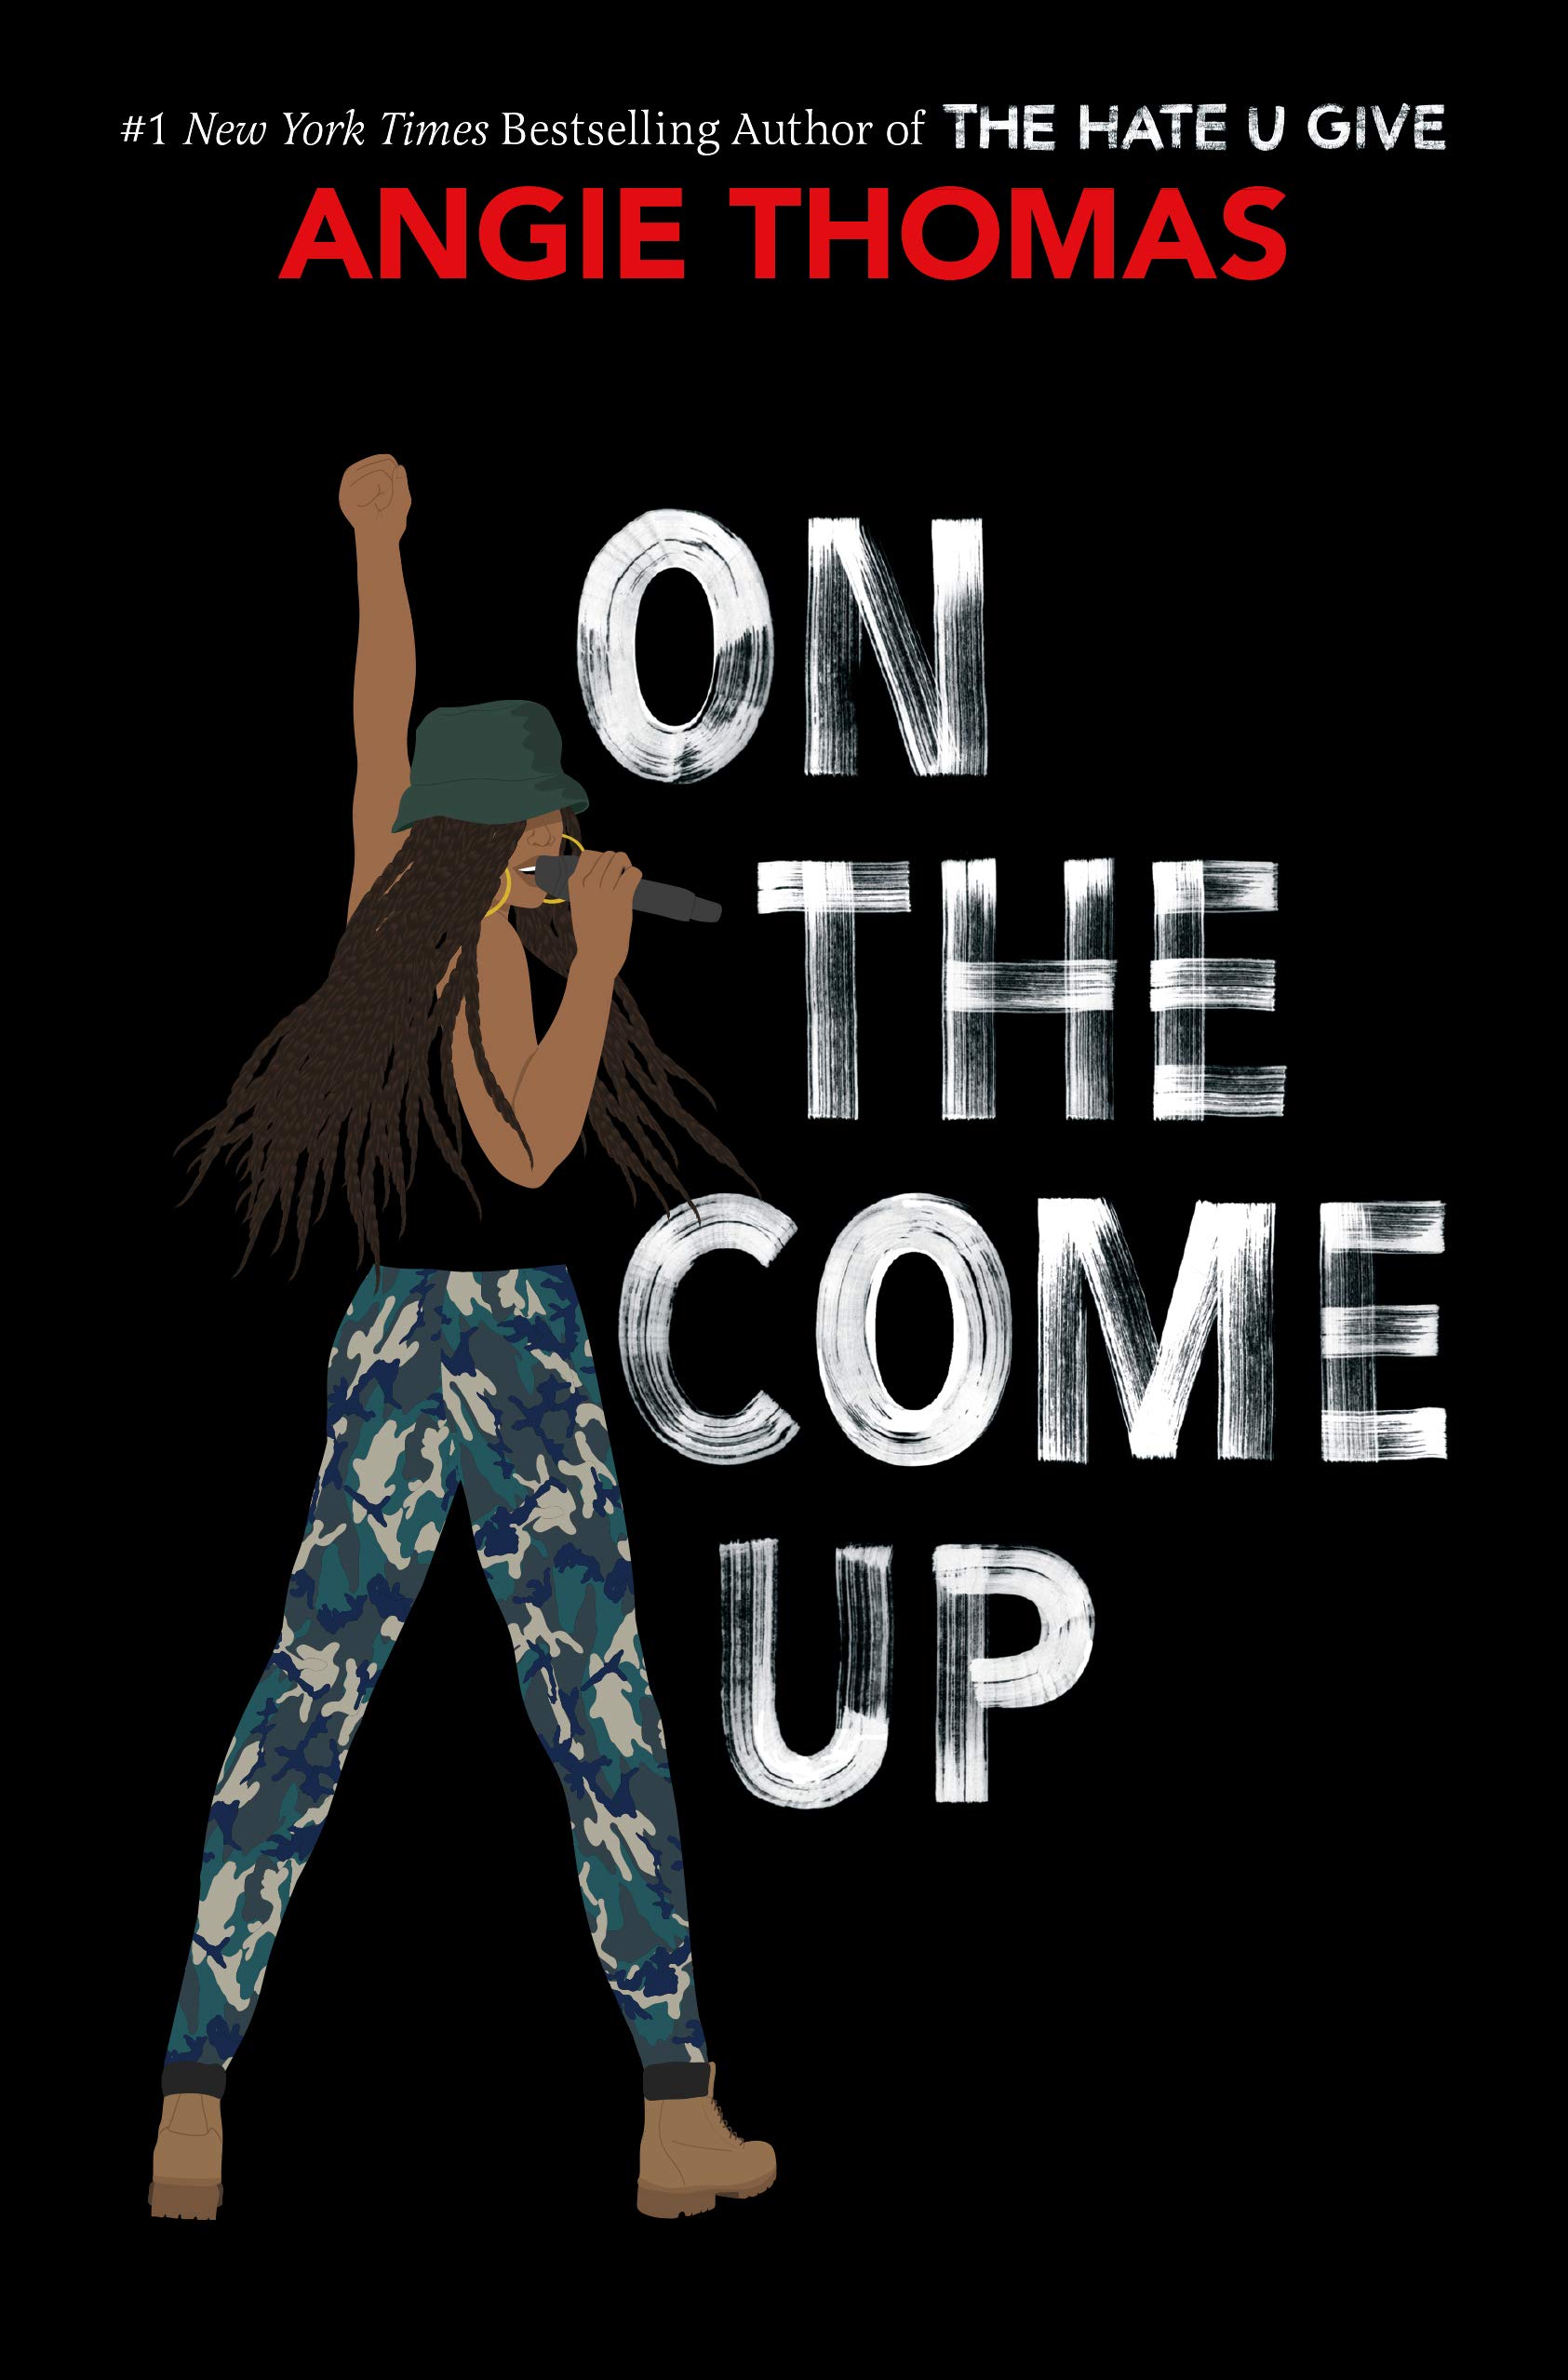 Copertina di "On the come up", il libro che ispira l'omonimo film.